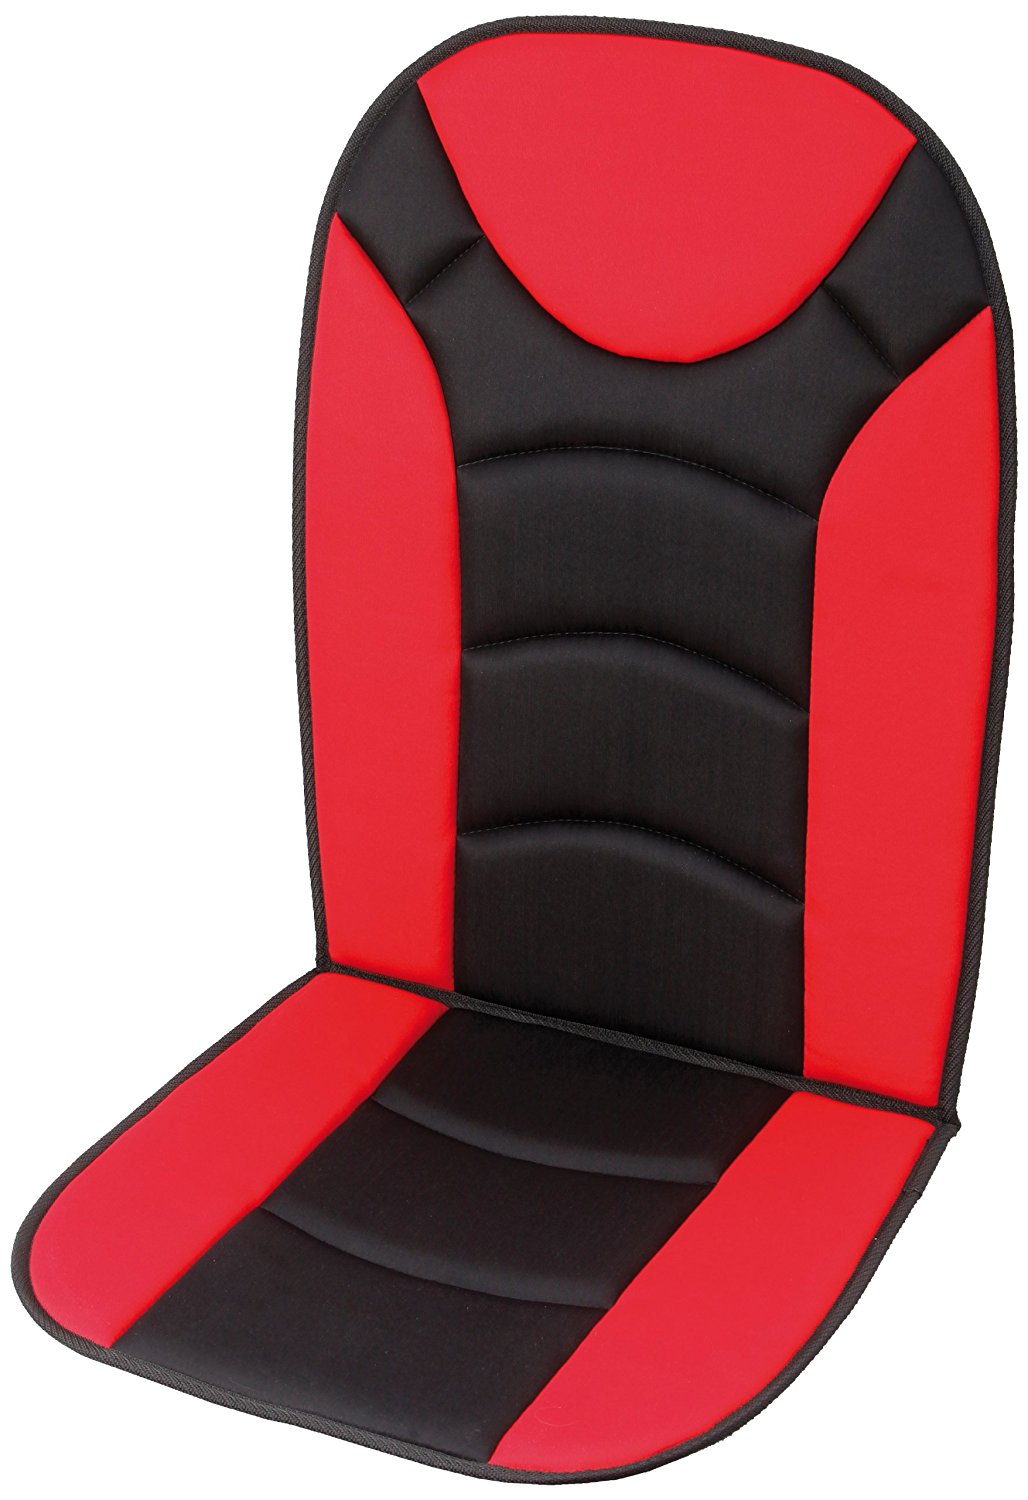 Unitec Sitzauflage Trend schwarz/rot